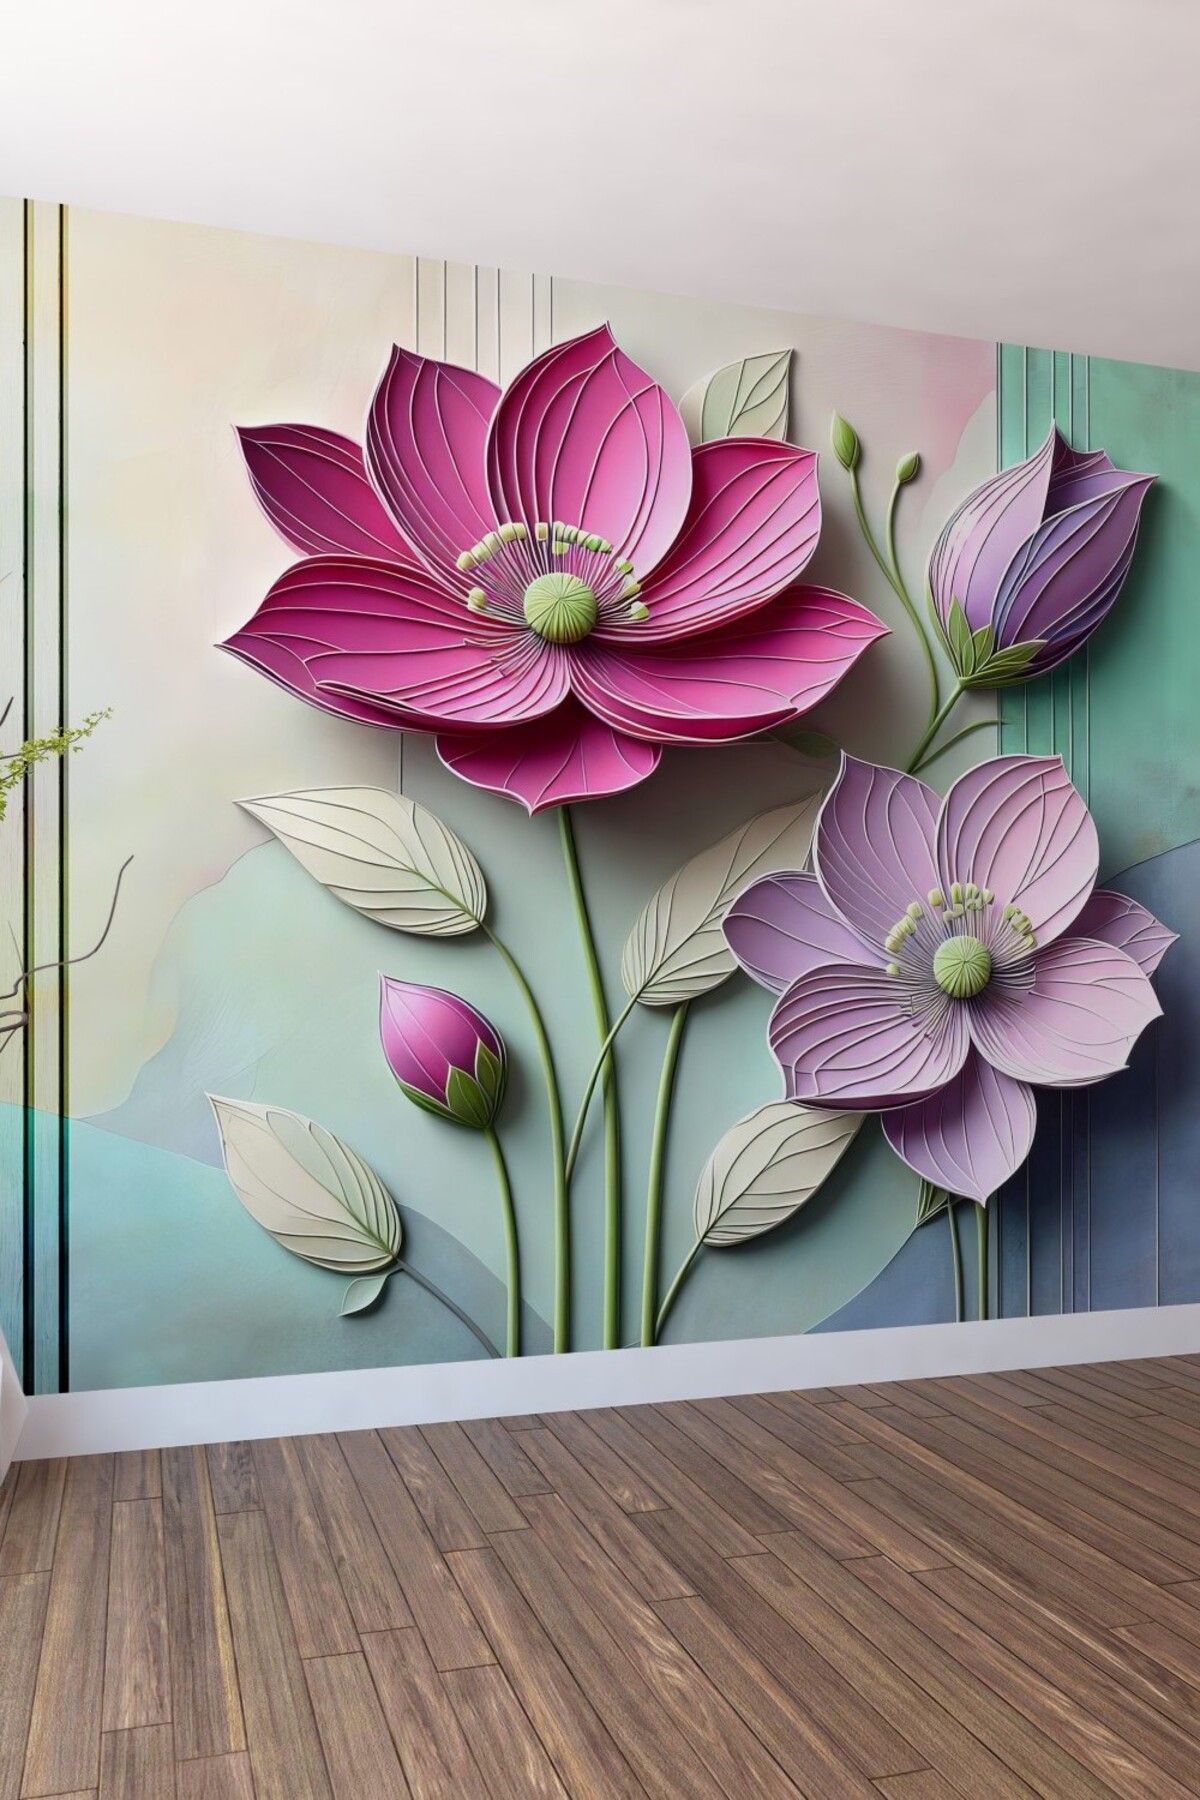 FX WallCoverings Dev Çiçeklerin Büyüsü: 3D Lotus Duvar Kağıdı